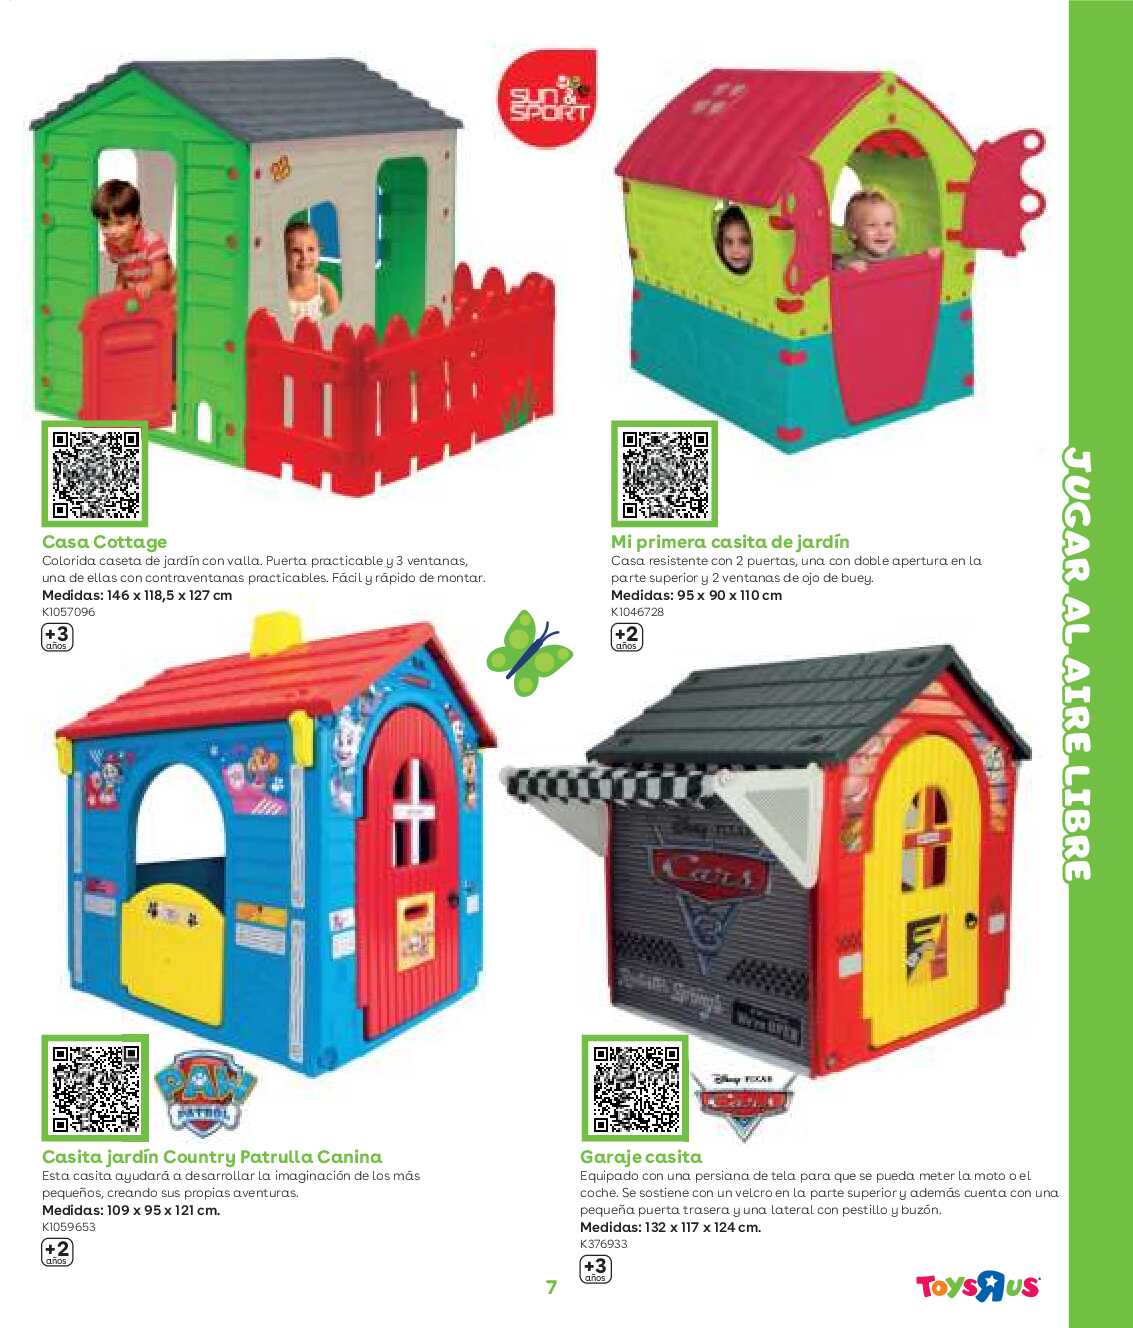 Guía aire libre Toys R Us. Página 07